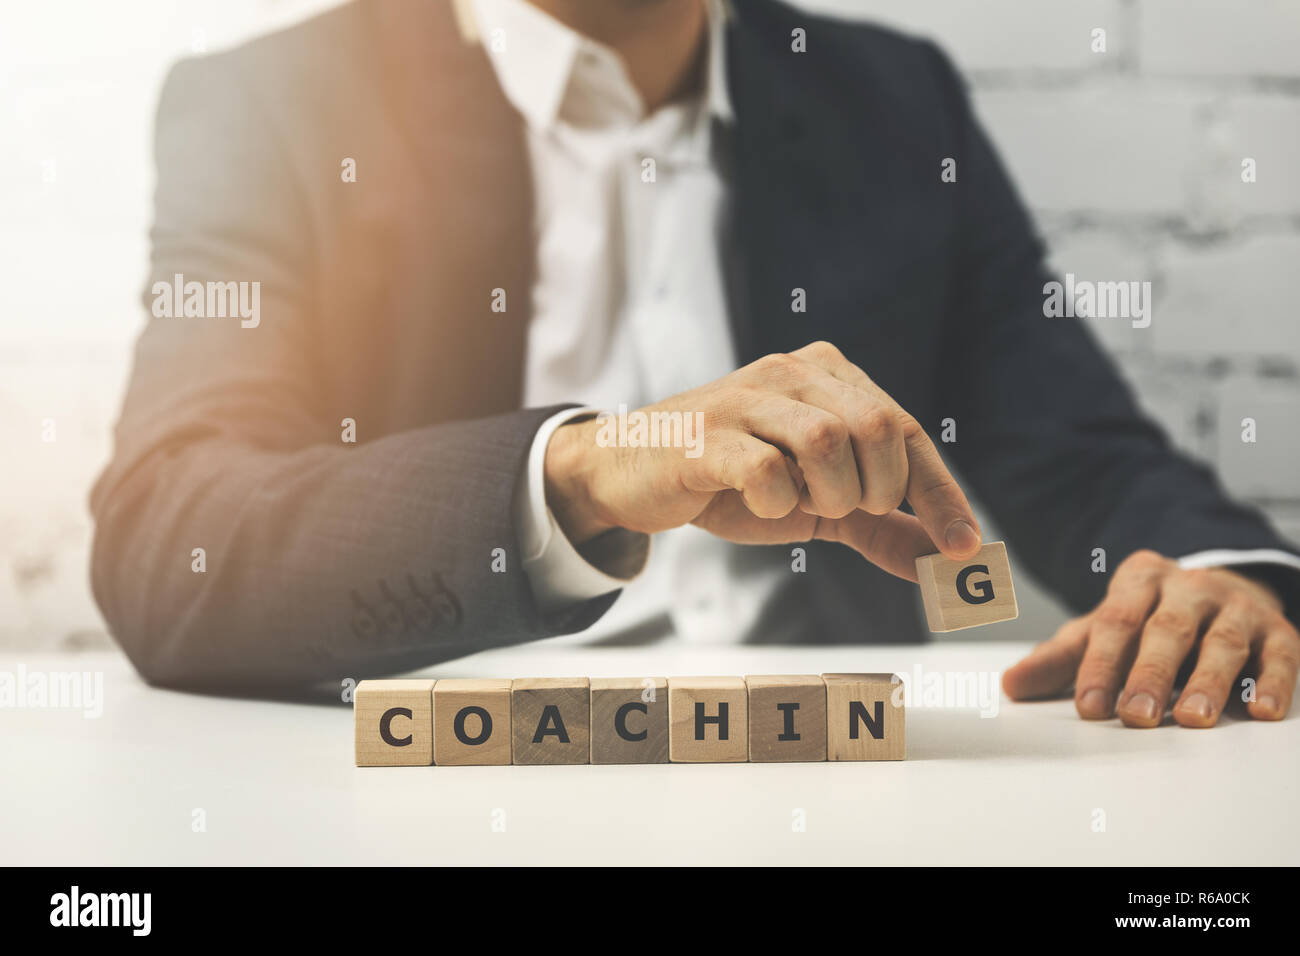 Business coaching concept Banque D'Images